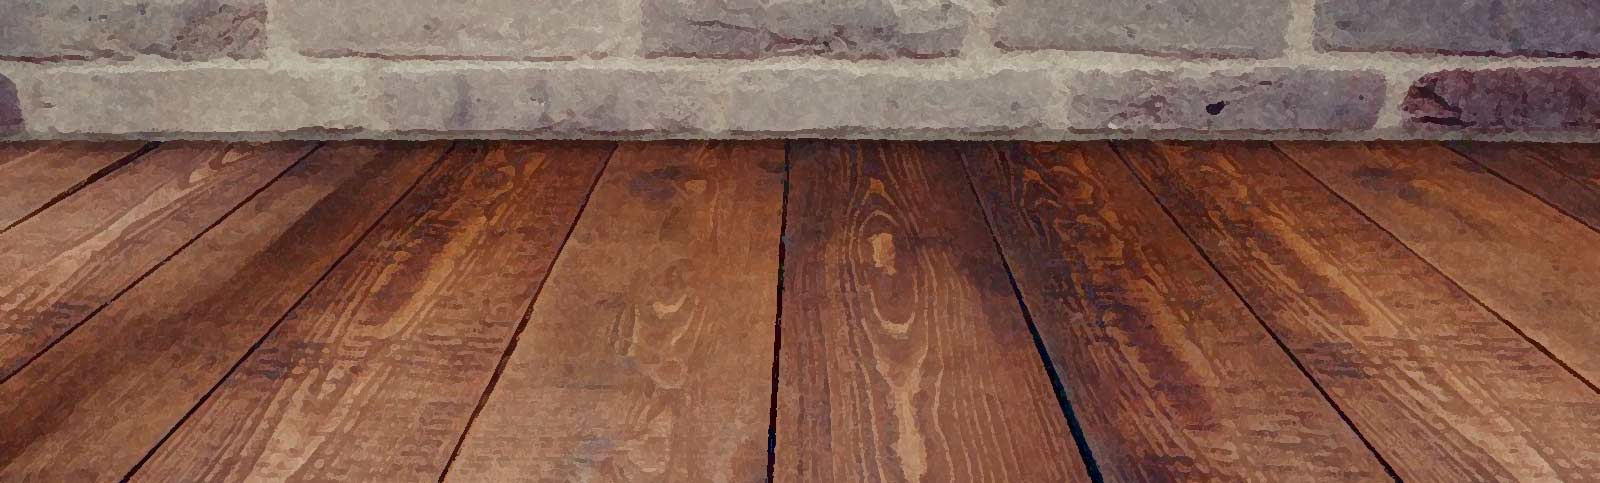 Clean Laminate Wood Floors, Best Way To Clean Hardwood Floors Without Streaking